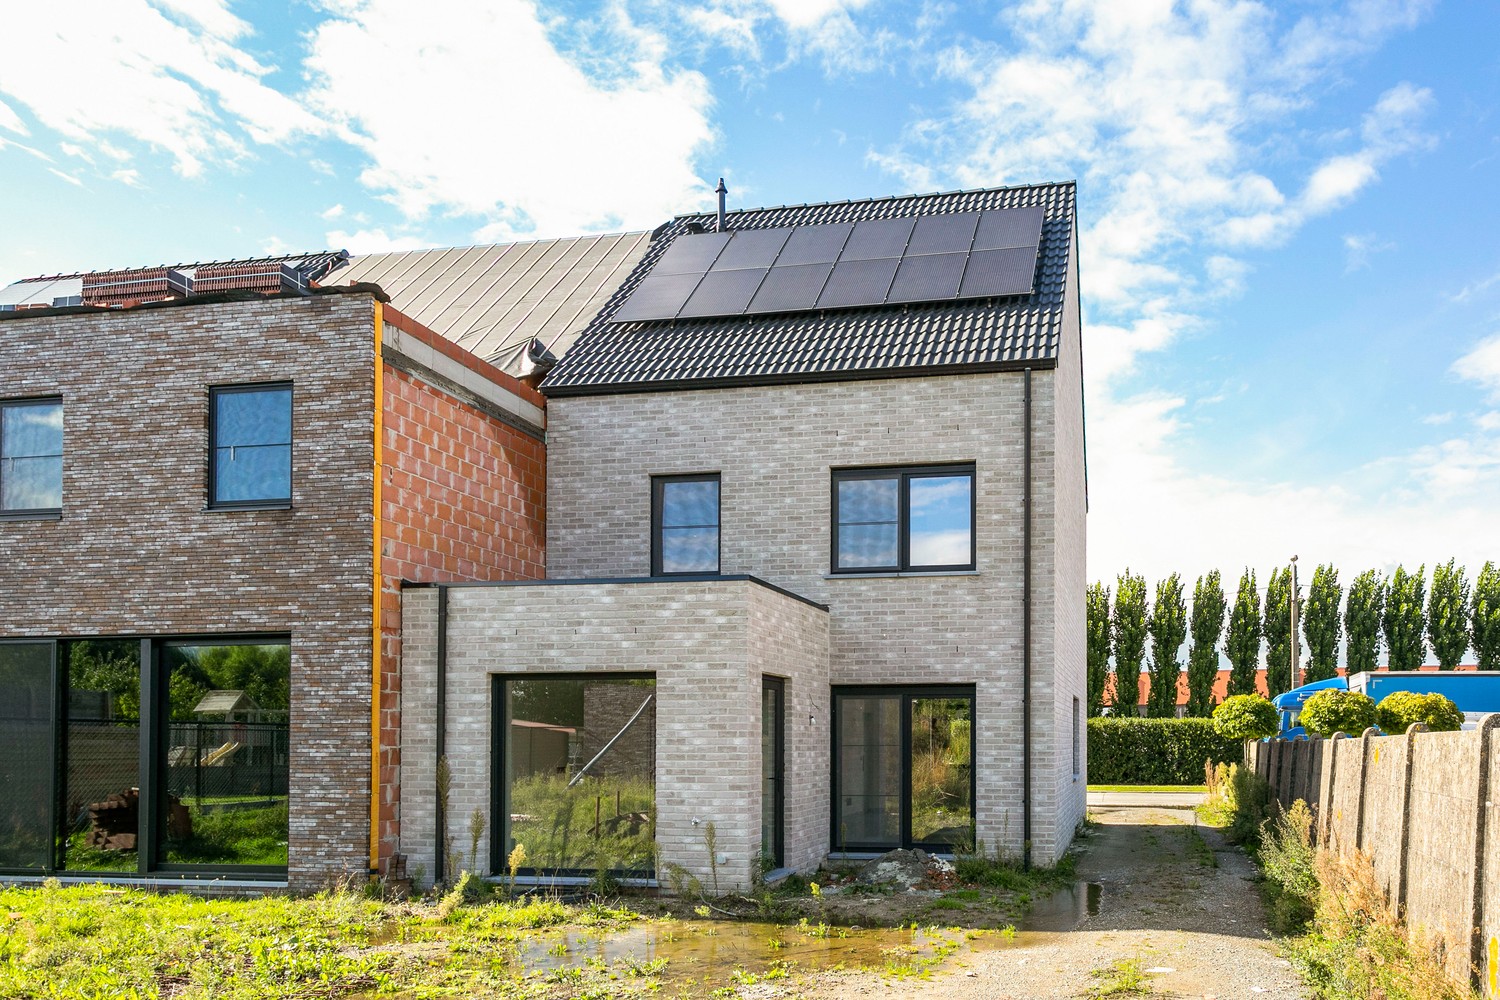 Gloednieuwe, energiezuinige woning met 3 slaapkamers & zonnige tuin in Koningshooikt! afbeelding 18